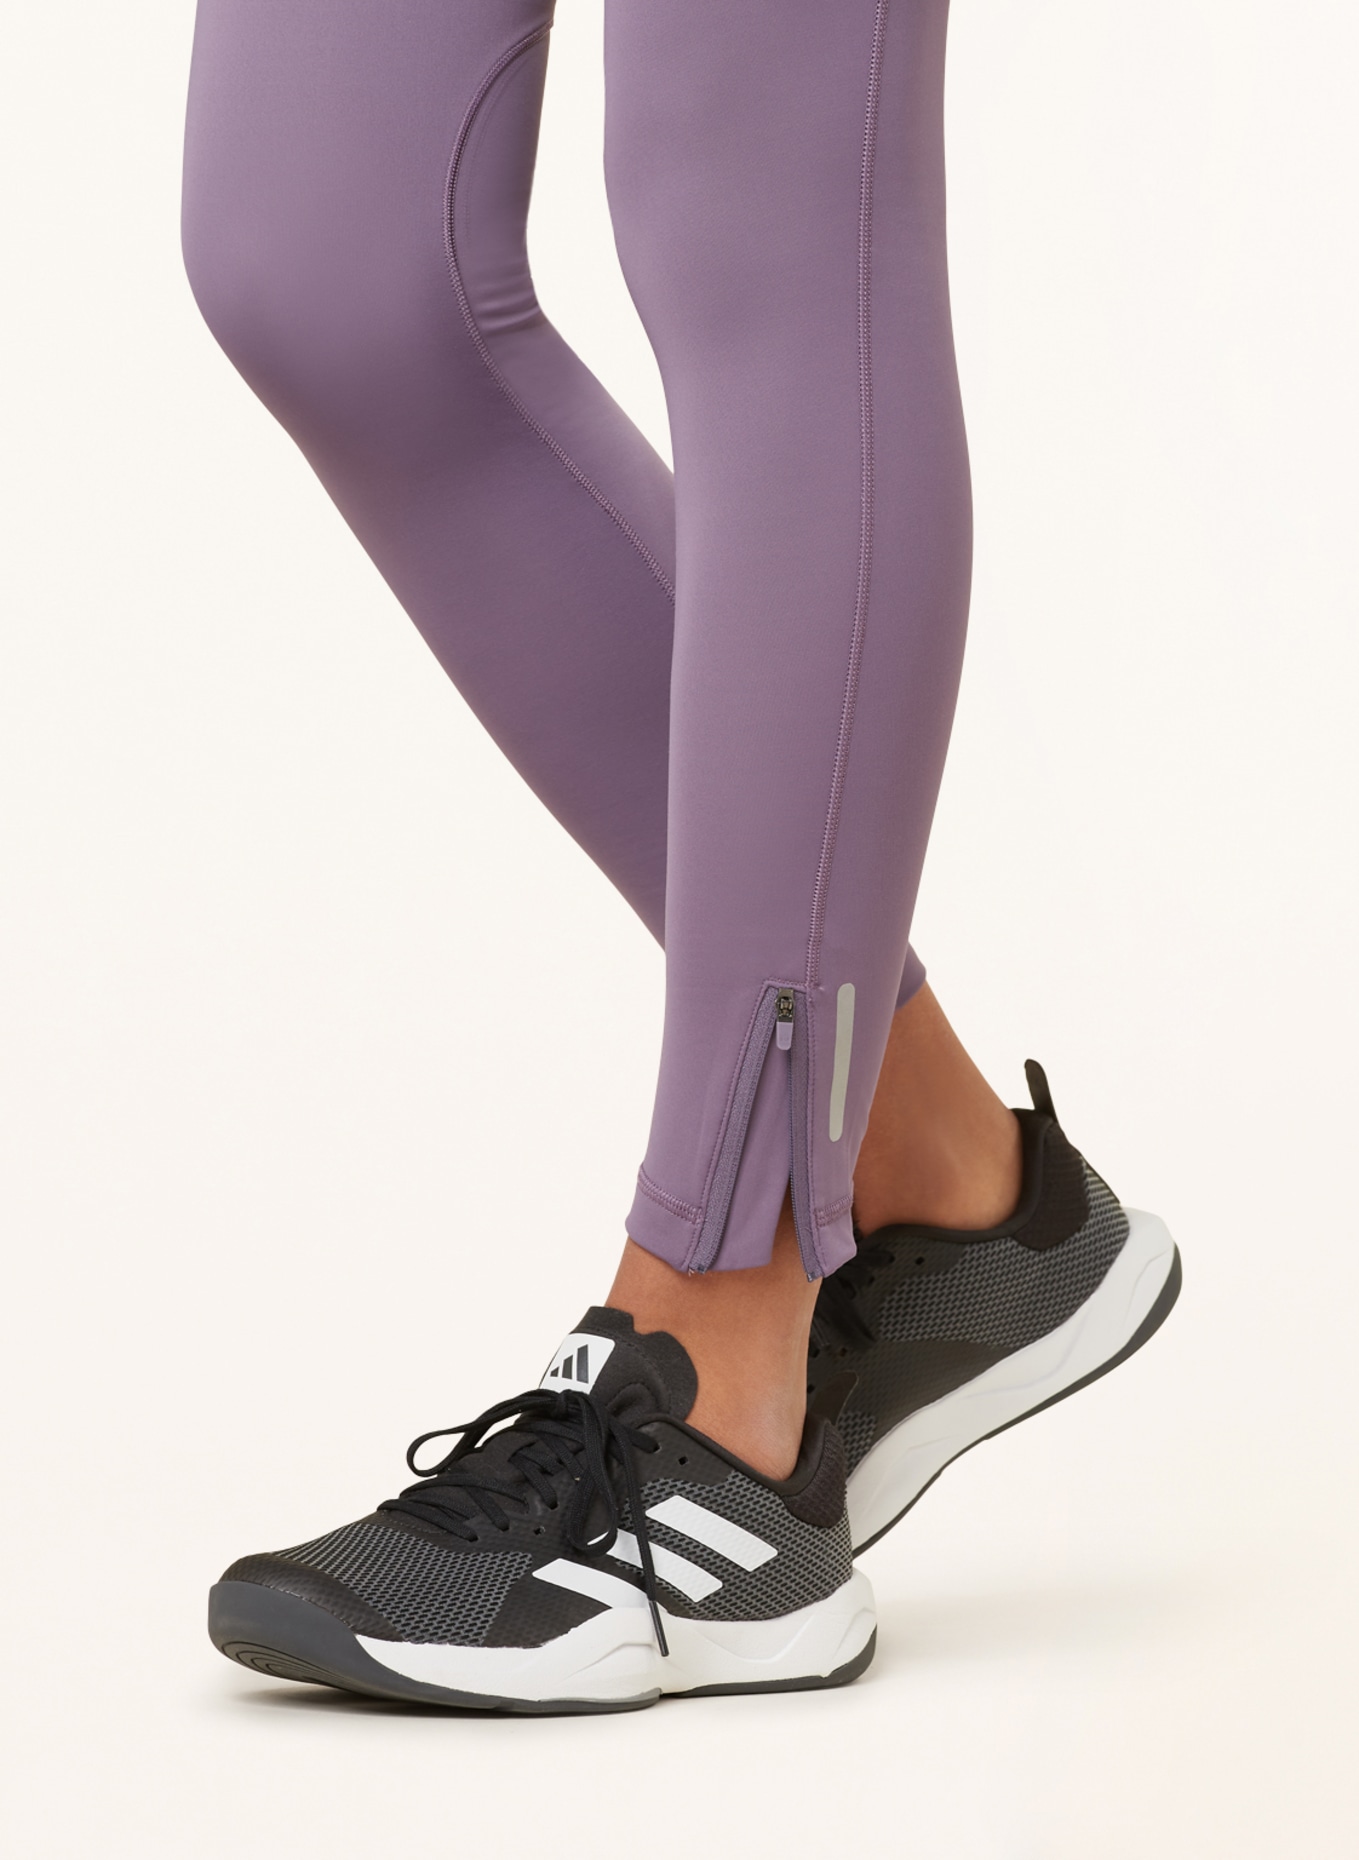 adidas Running tights ULTIMATE RUNNING WINTER in light purple